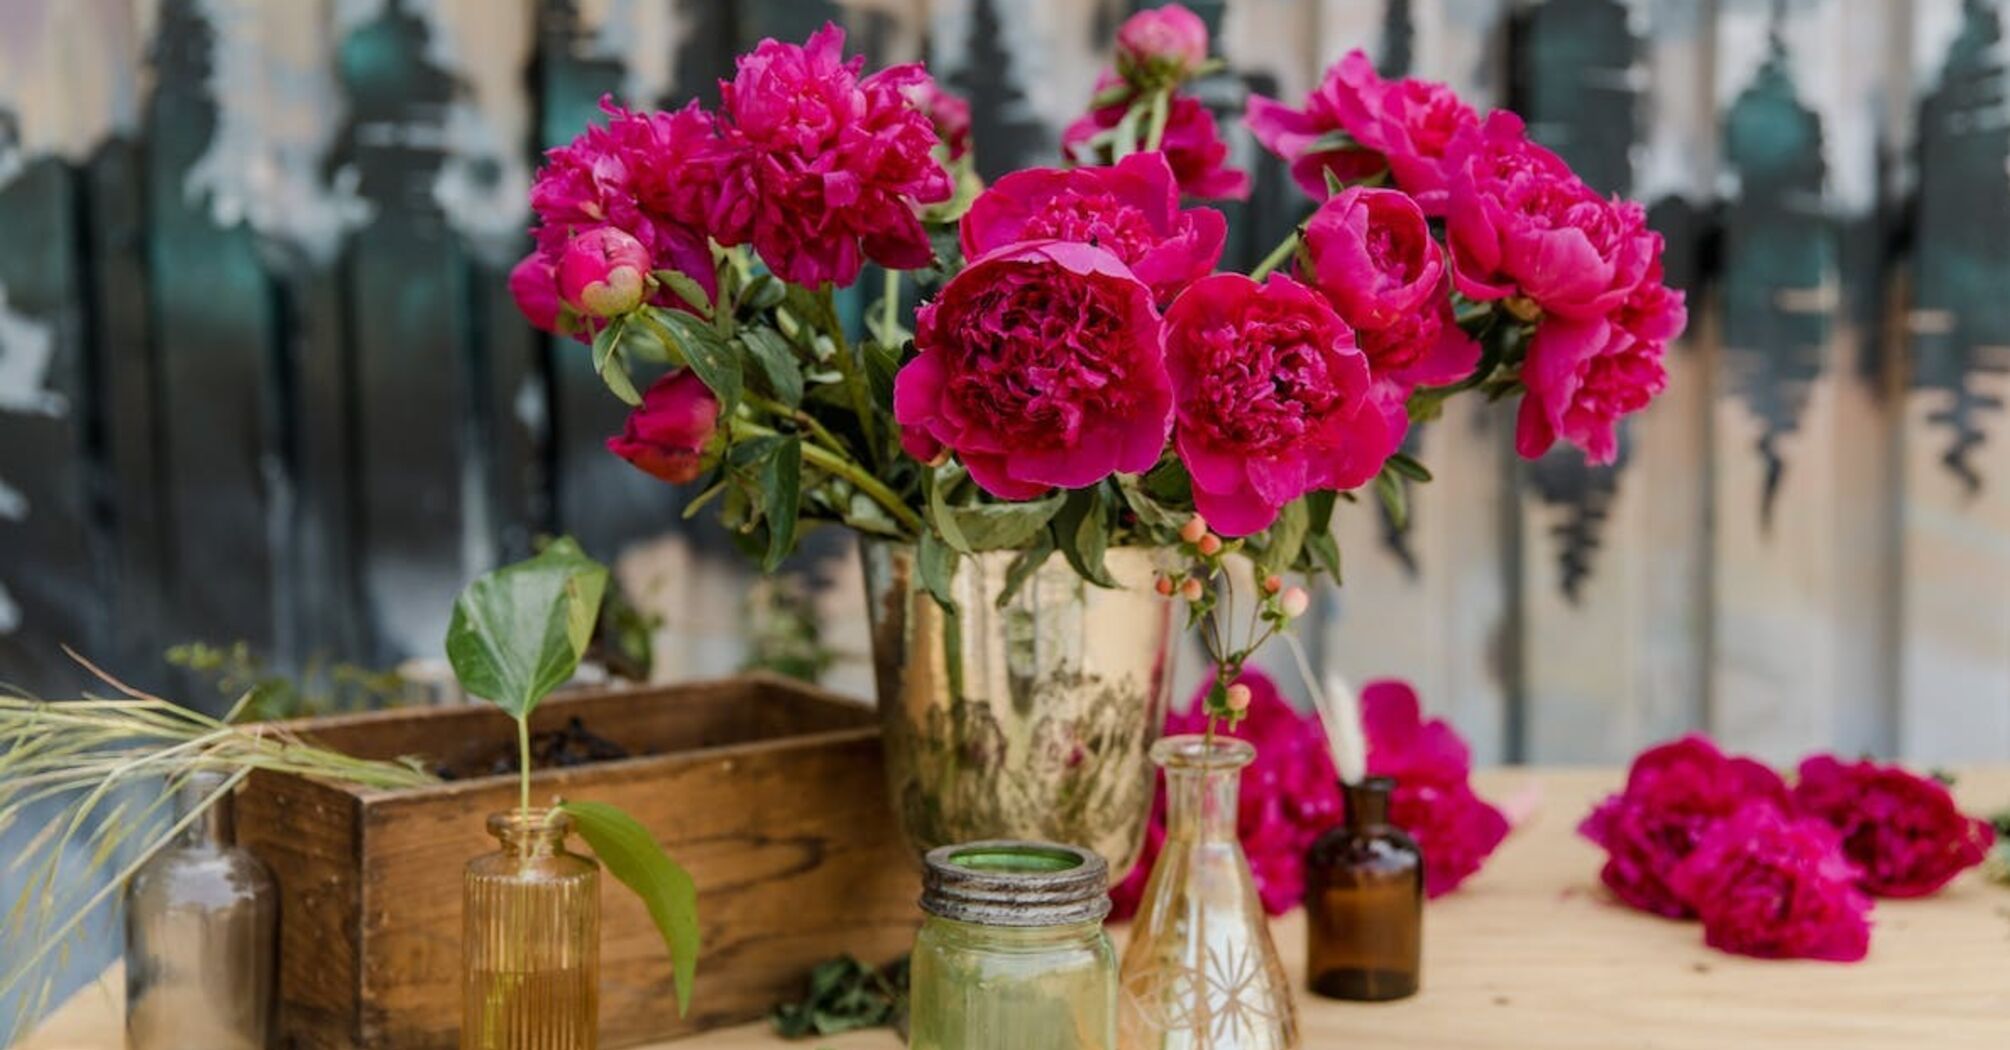 Цветы в вазе будут долго стоять благодаря алкоголю и уксусу: как воспользоваться лайфхаком